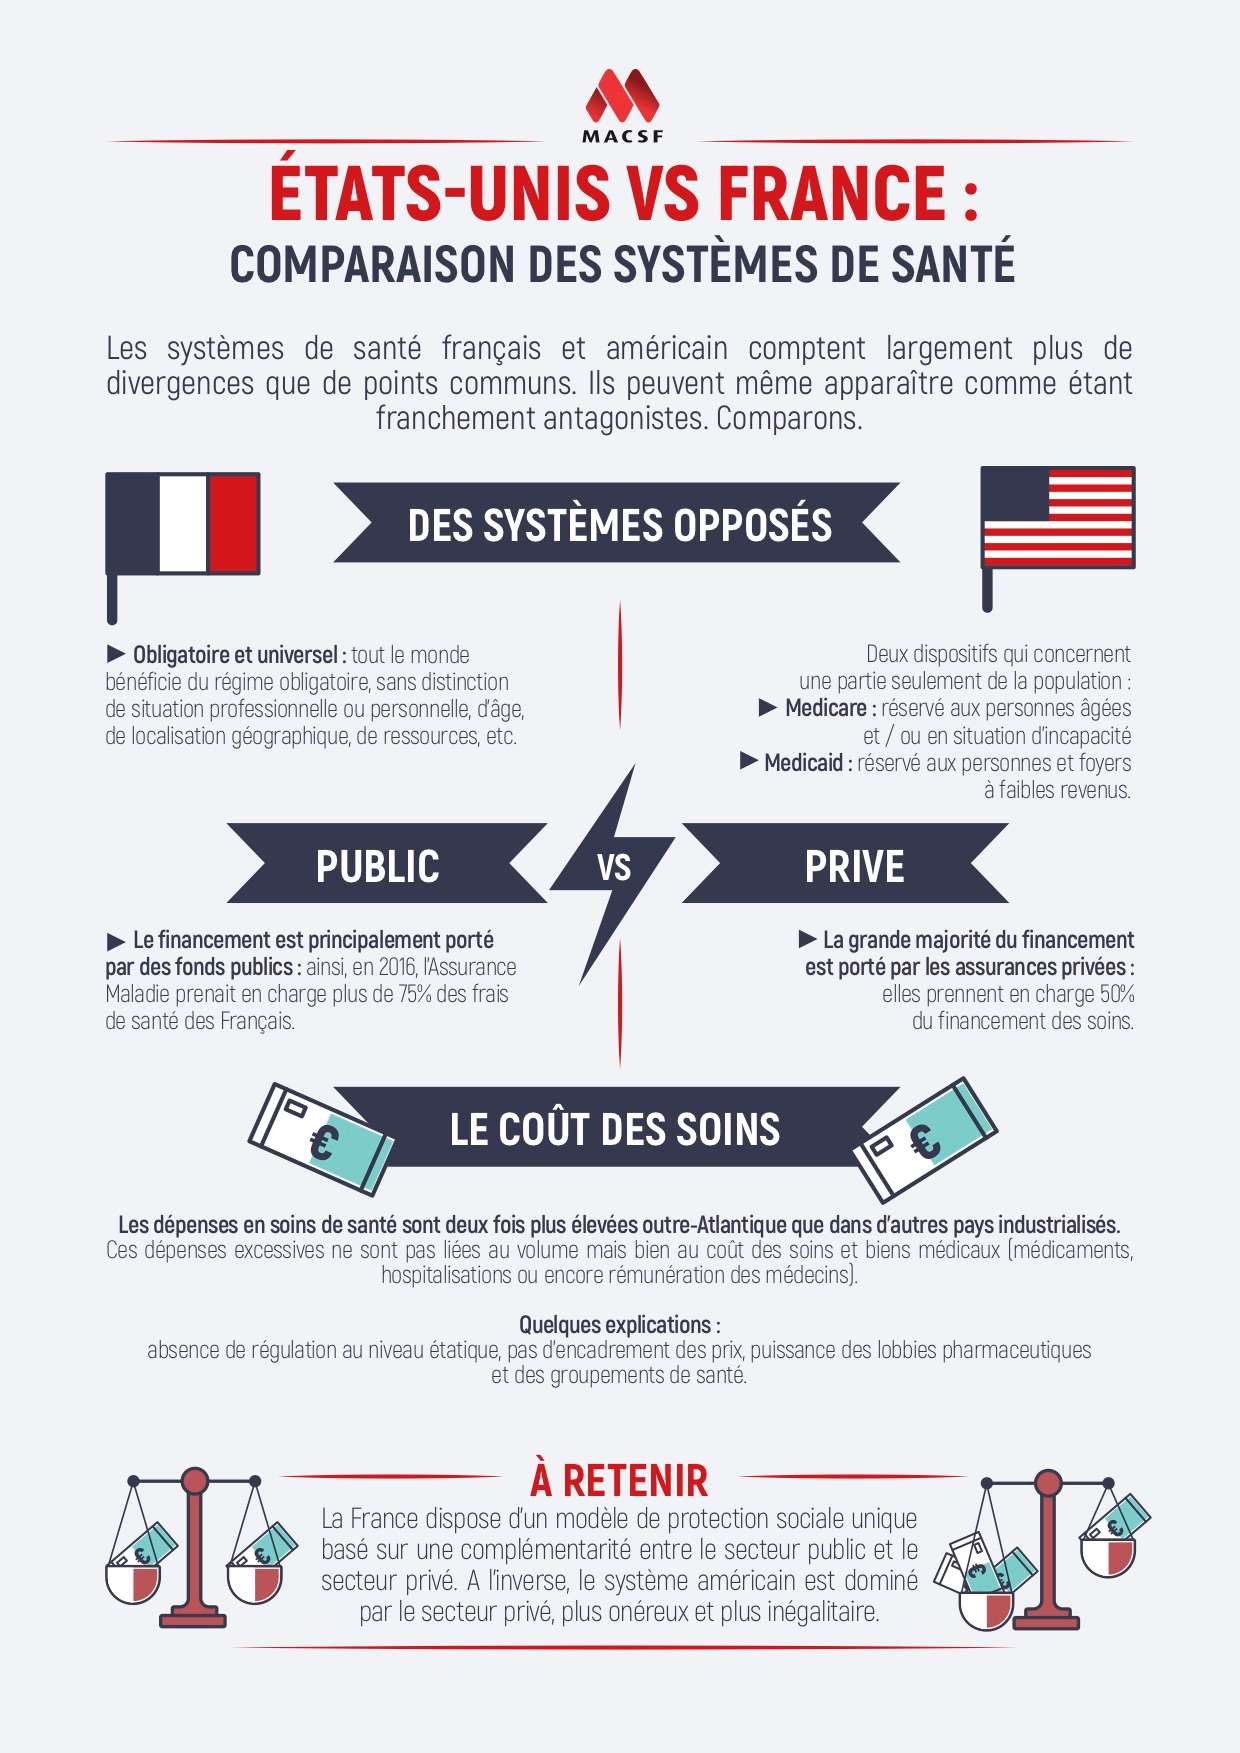 Comparaison USA France assurance santé macsf